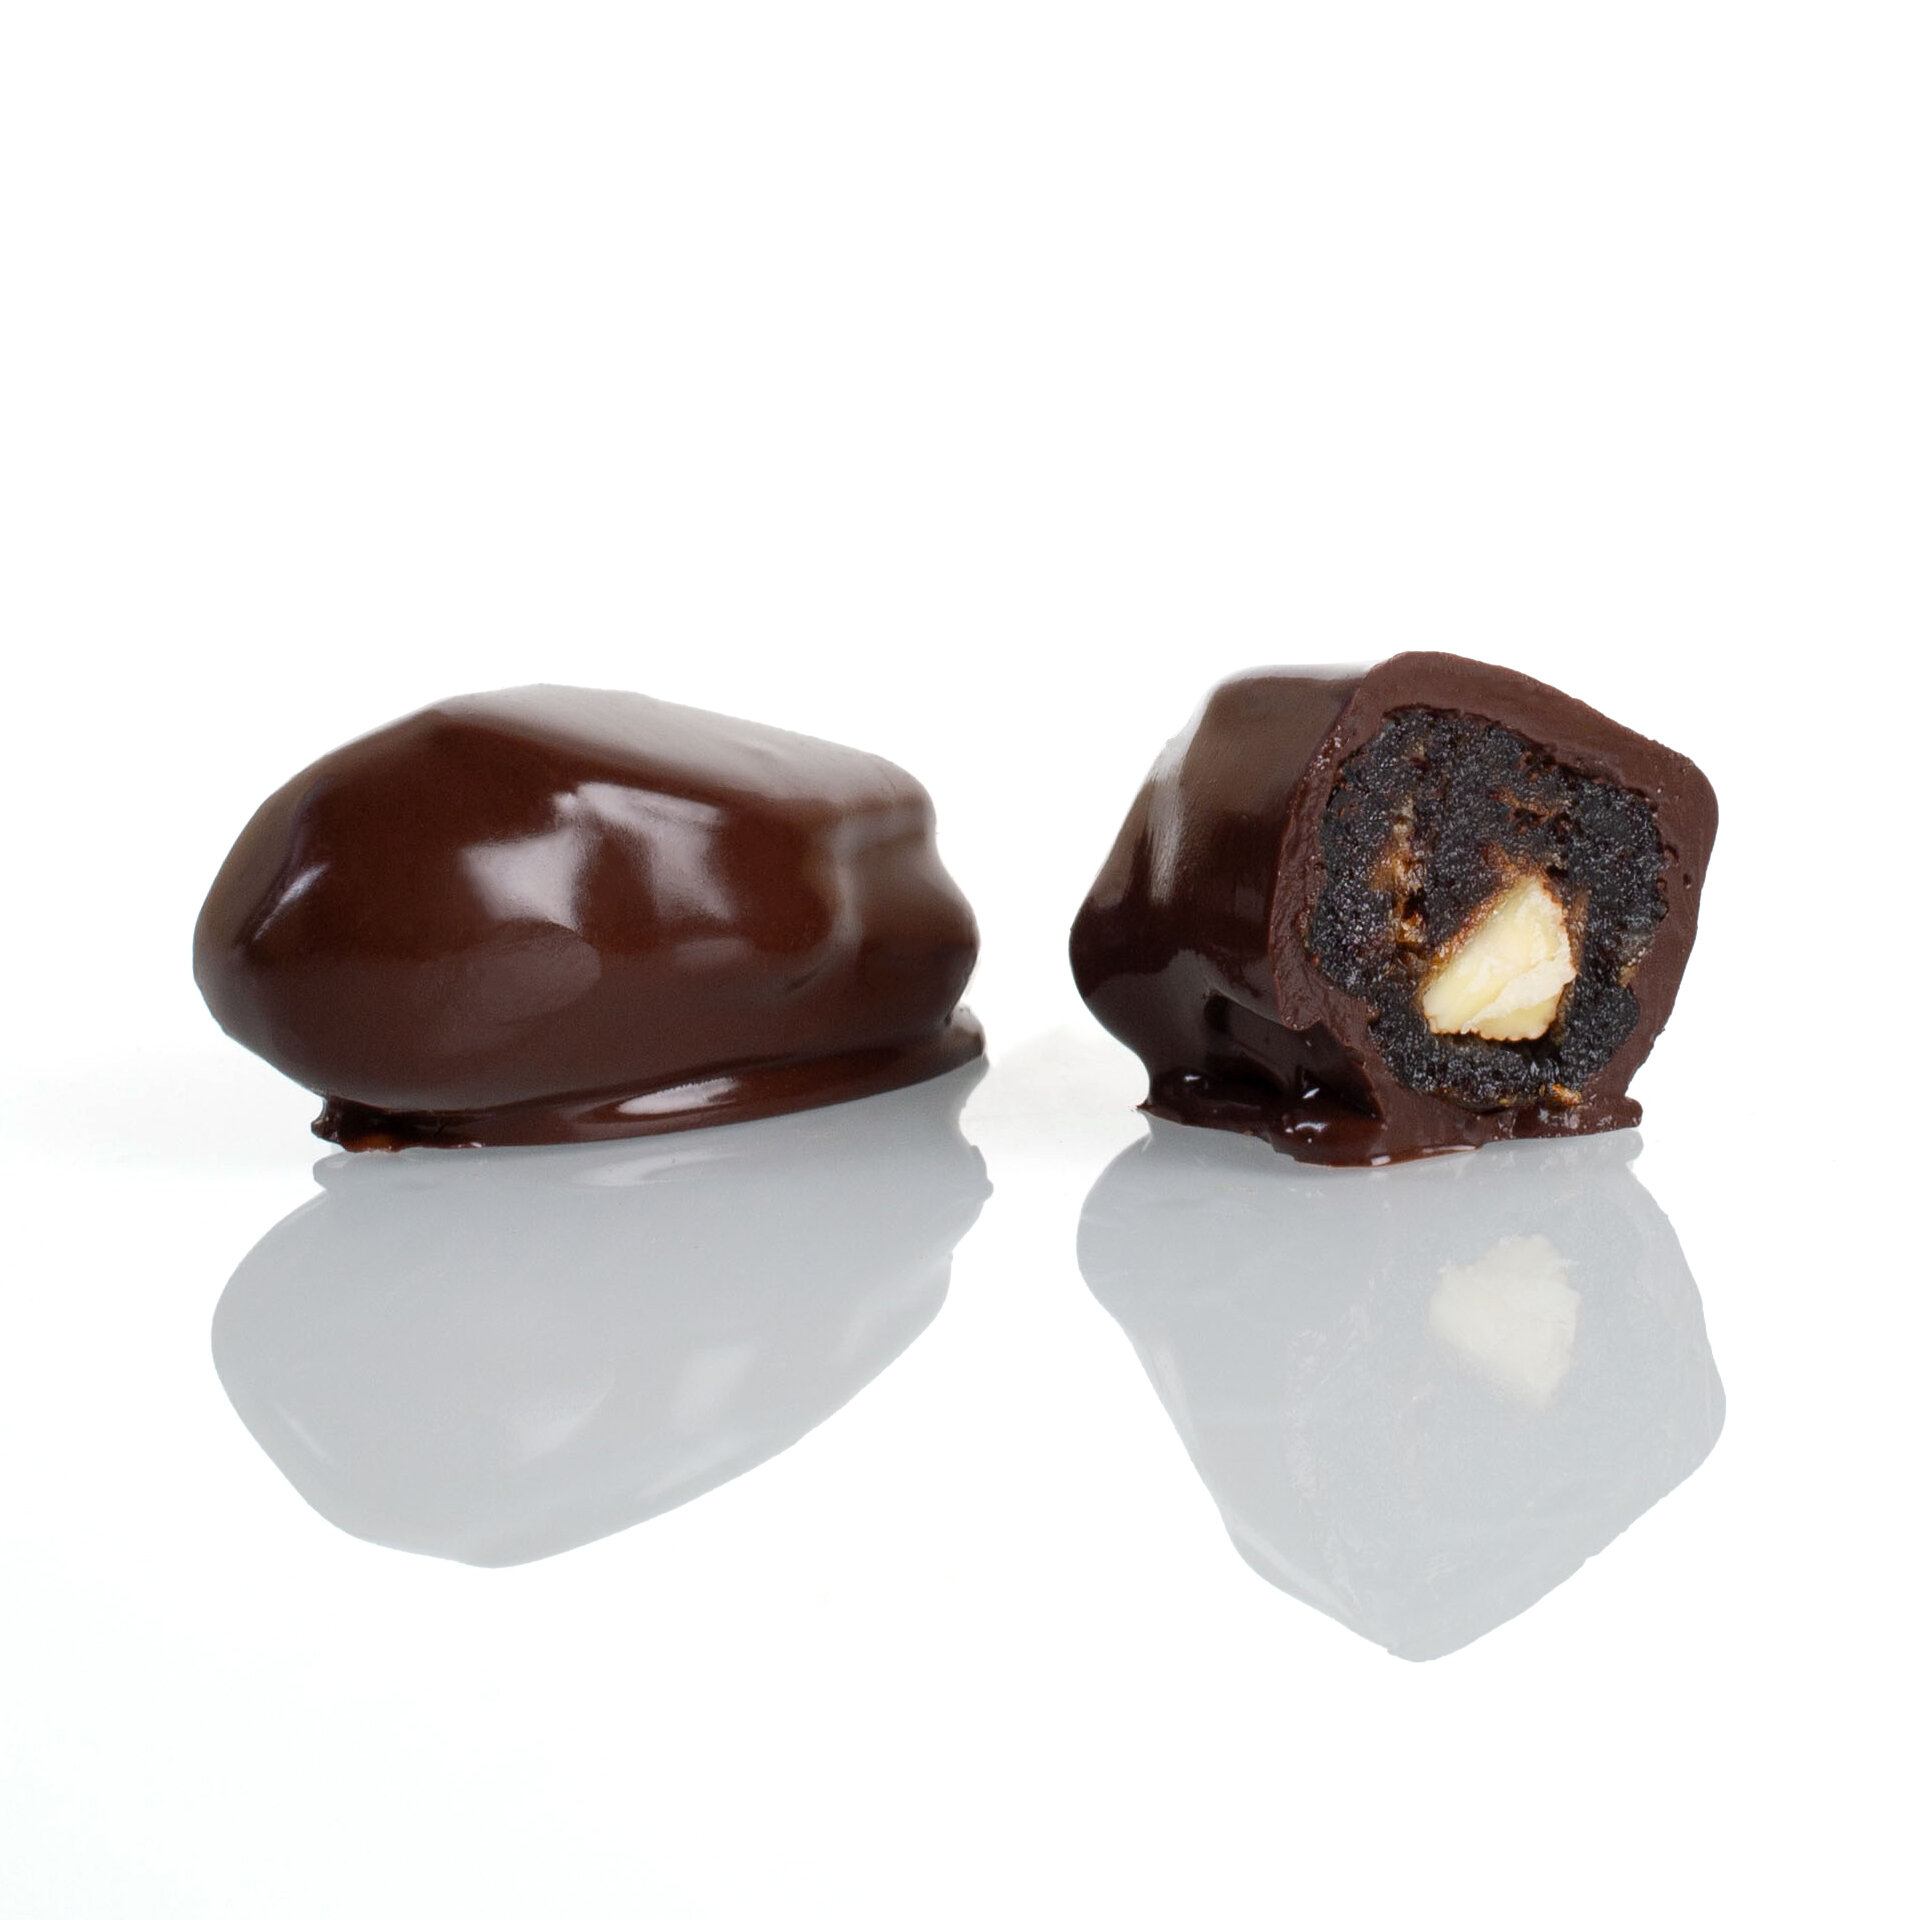 Финики С миндалем В шоколаде, ручная работа, шоколадные конфеты, Шеле-Шоколад, в подарочной упаковке, 150гр.